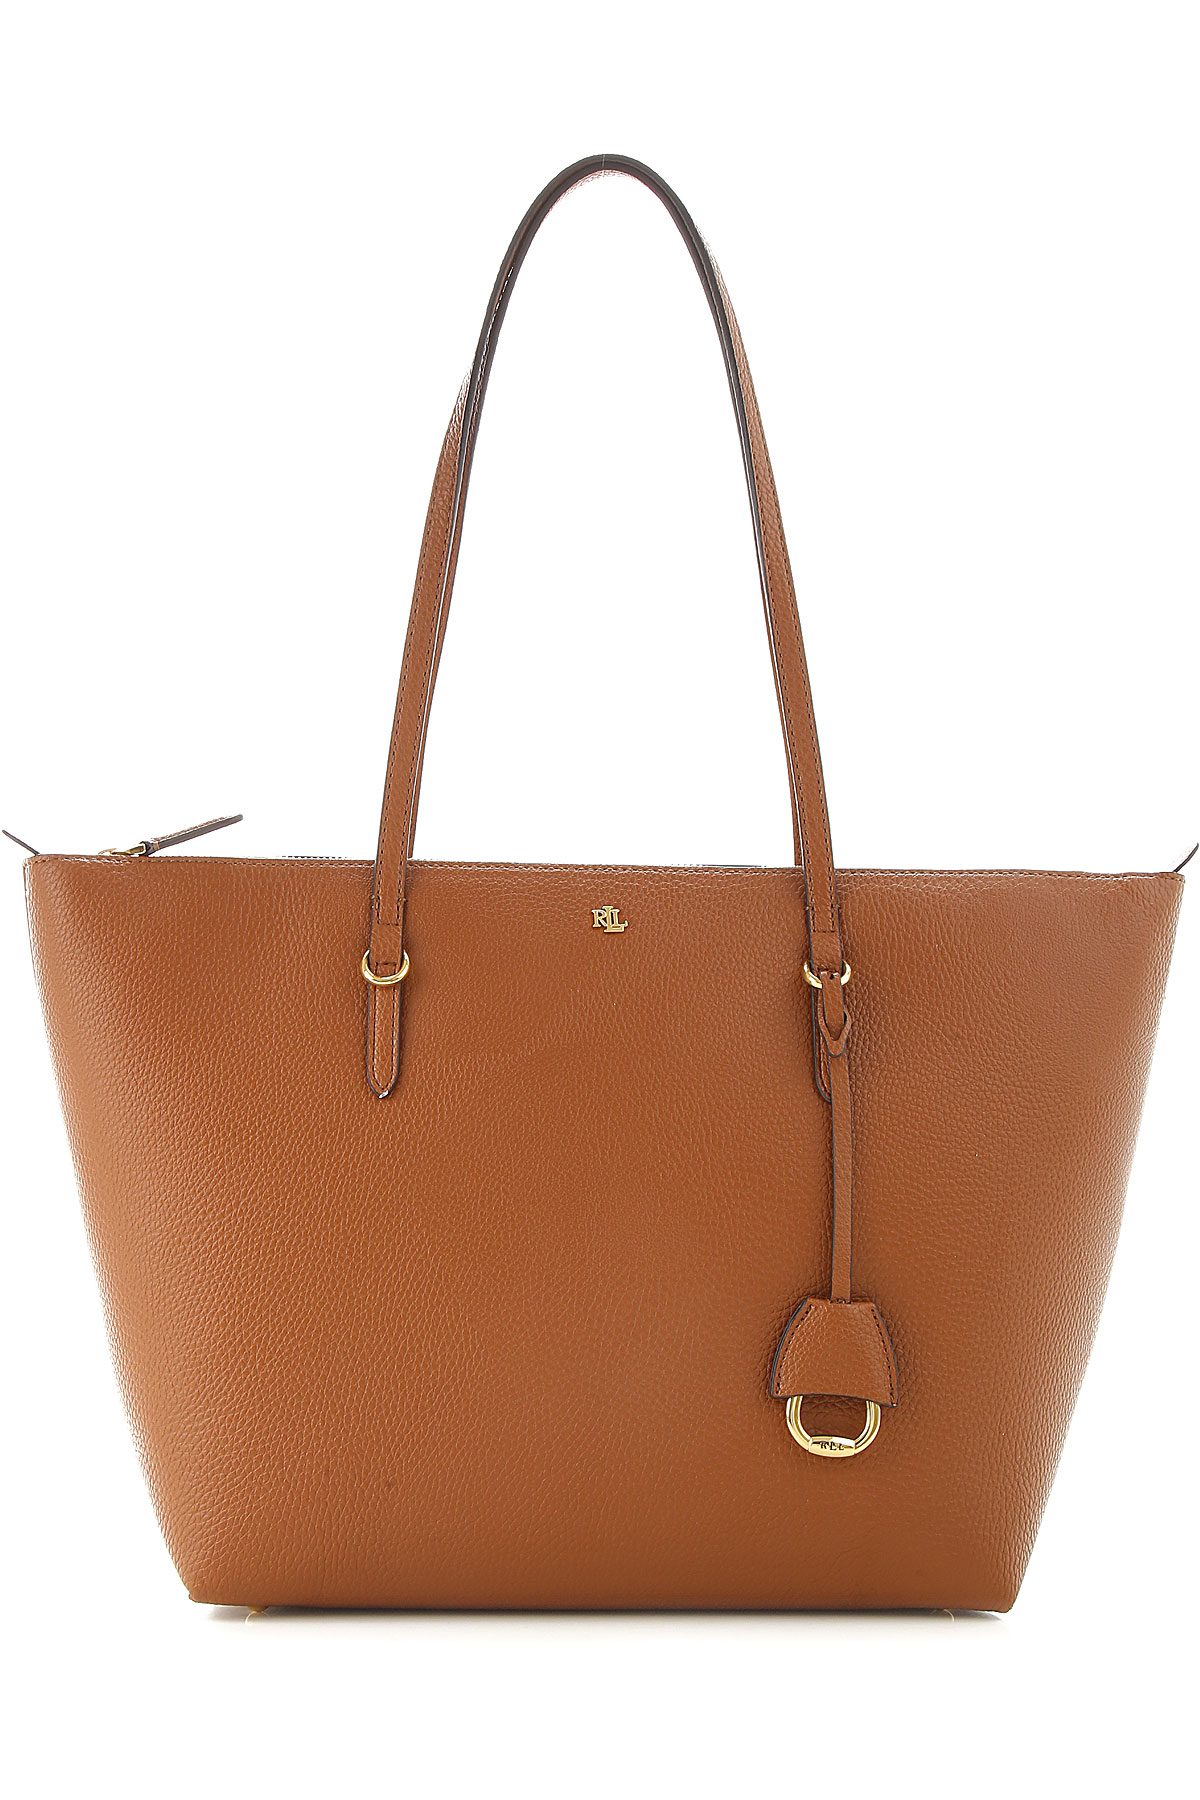 Handbags Ralph Lauren, Style code: 431752879011--